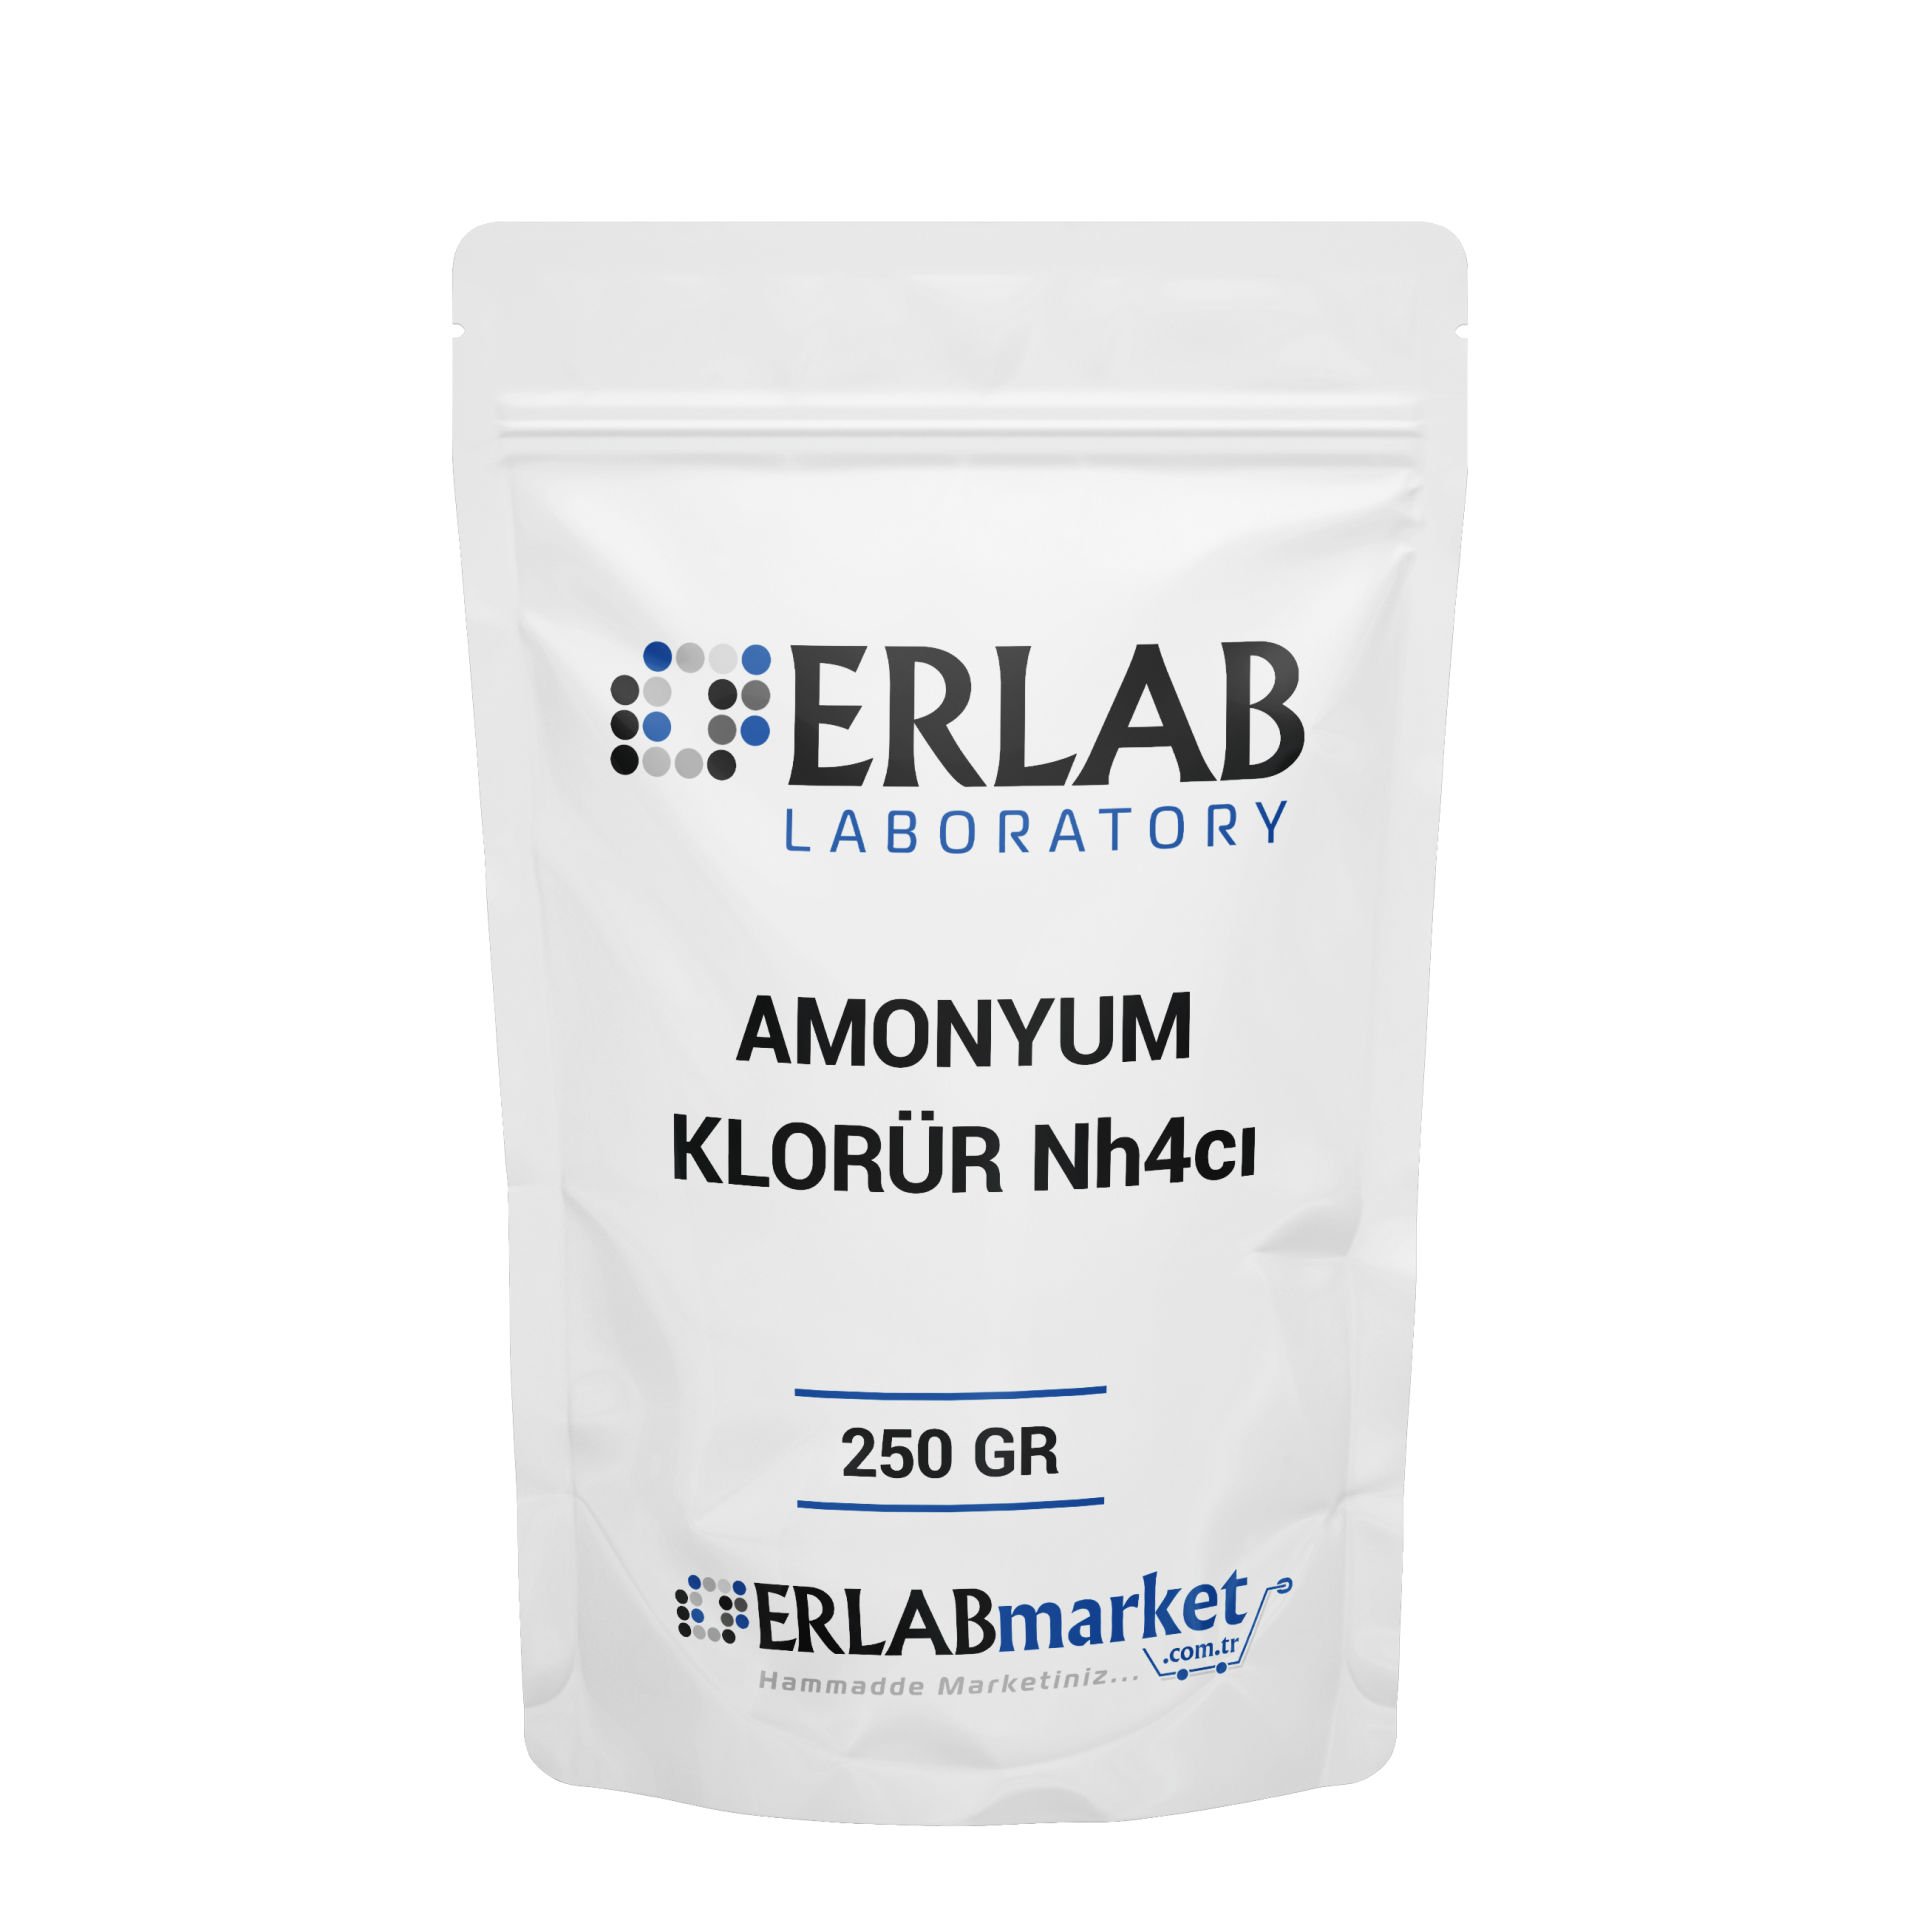 Amonyum Klorür - 250 GRAM  - Ammonium Chloride - Extra Pure